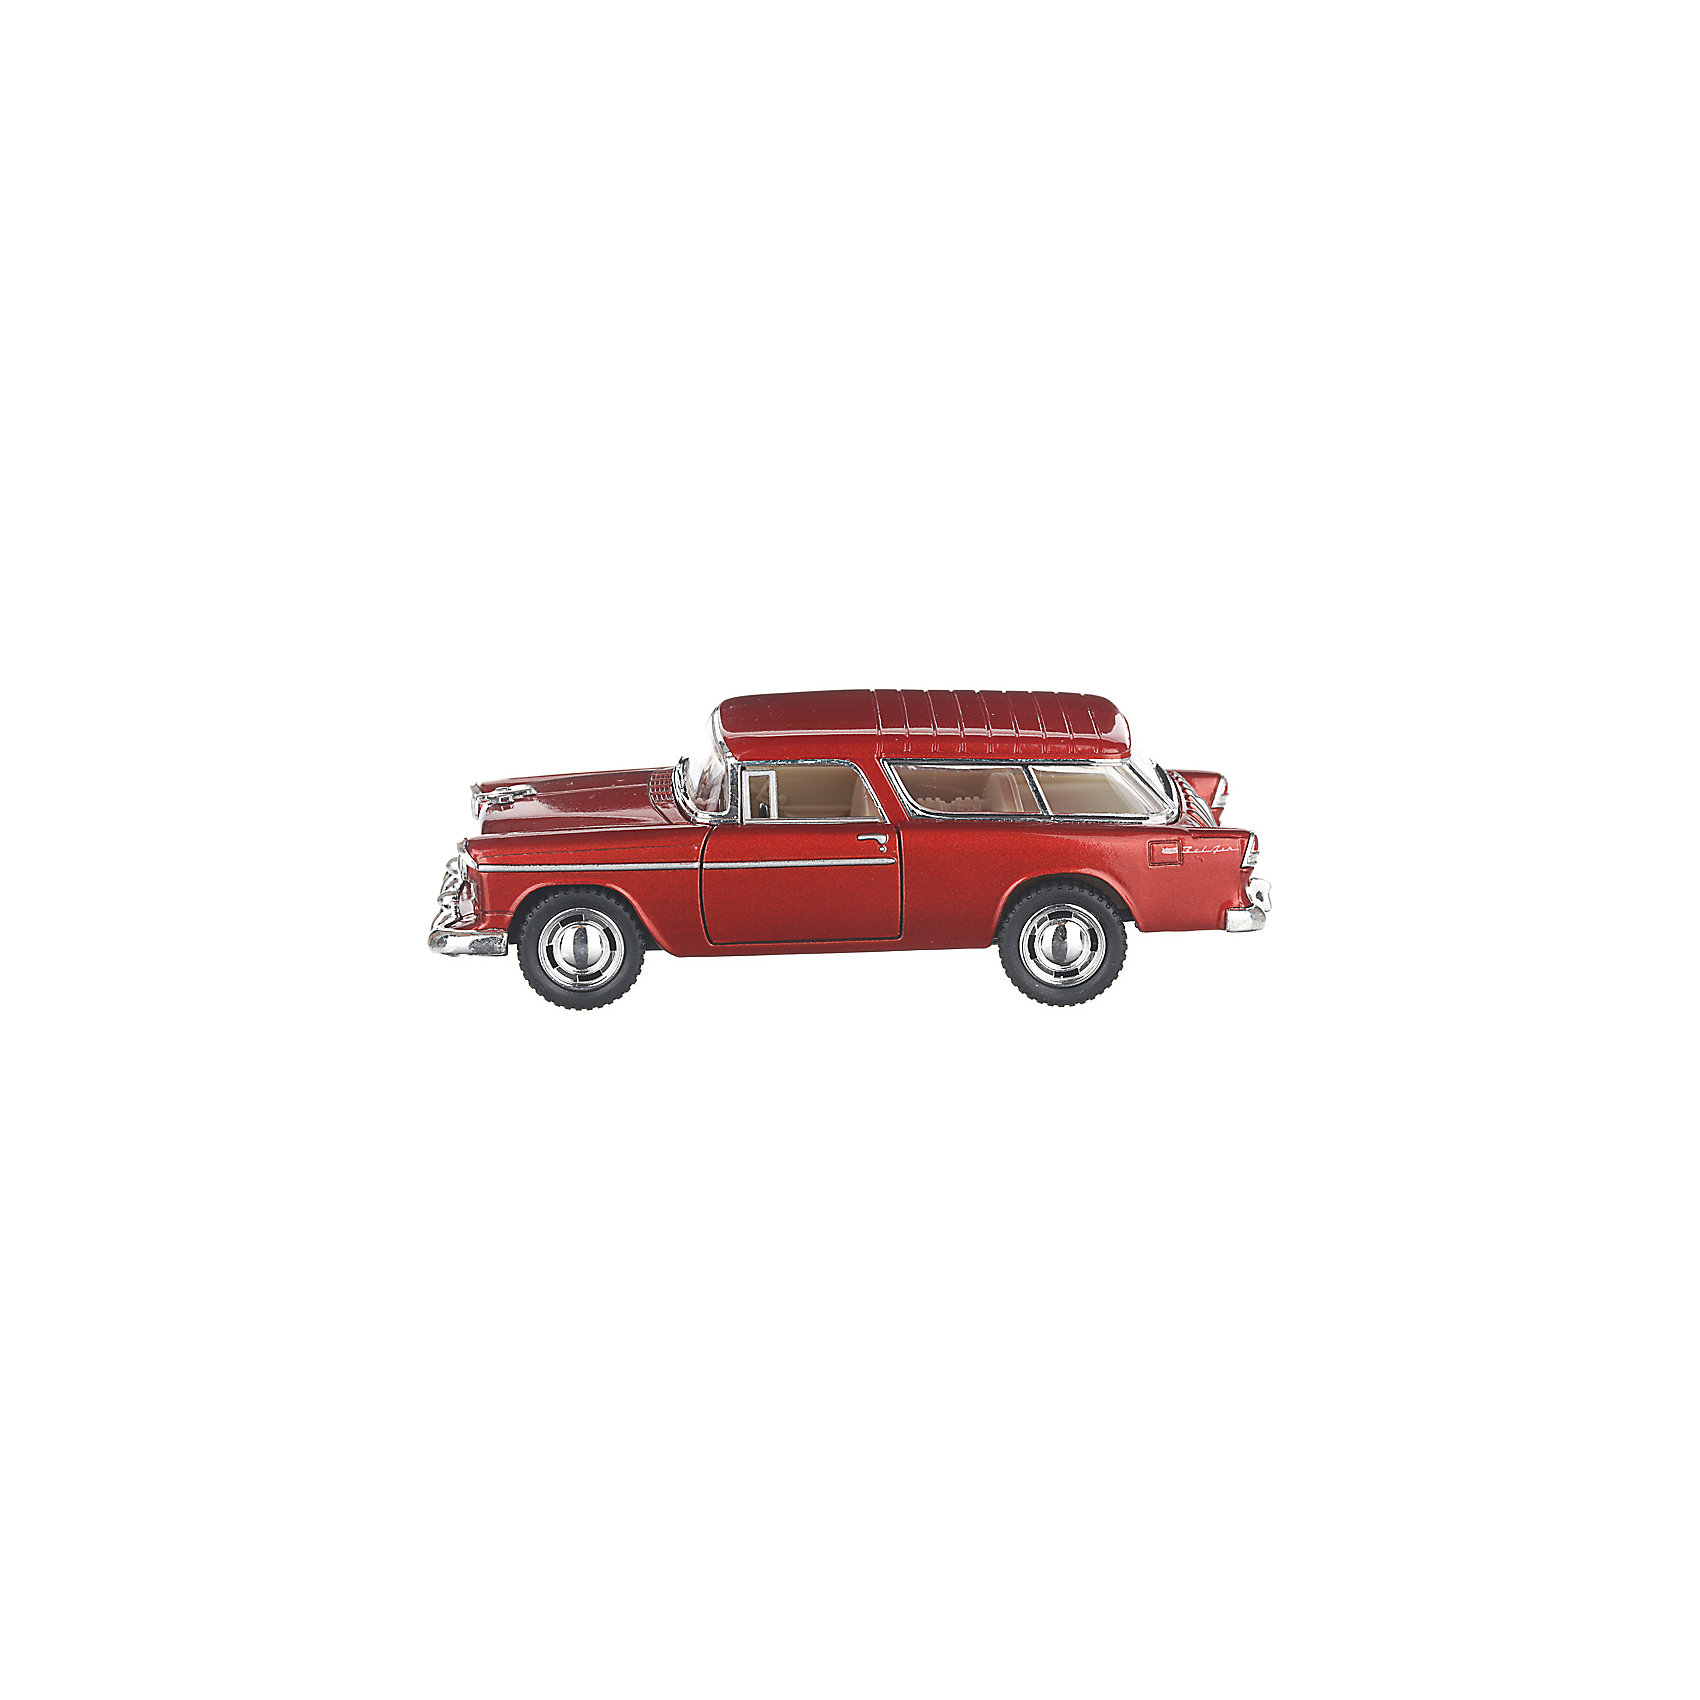 Коллекционная машинка Chevrolet Nomad hardtop, бордовая Serinity Toys 13232959